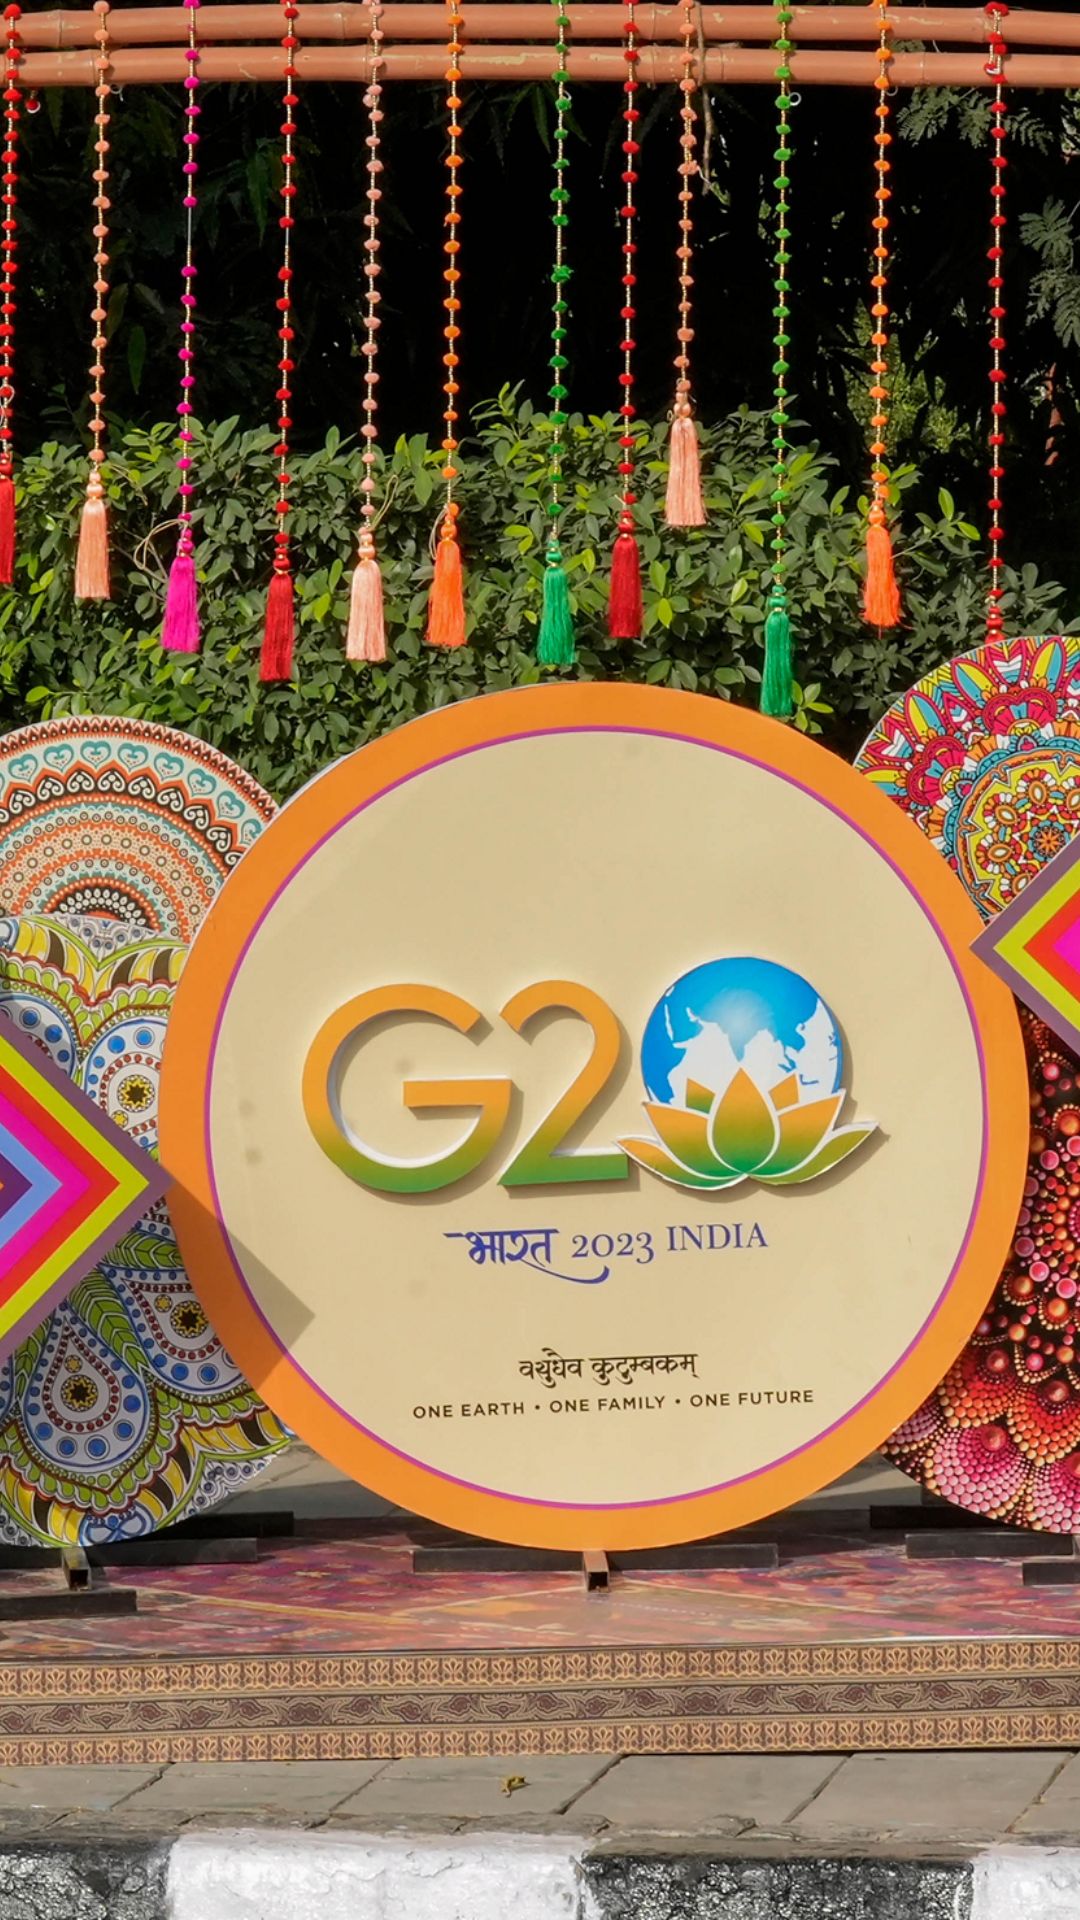 G-20 Summit: मेहमानों के स्वागत लिए तैयार है दिल्ली, देखें तस्वीरें